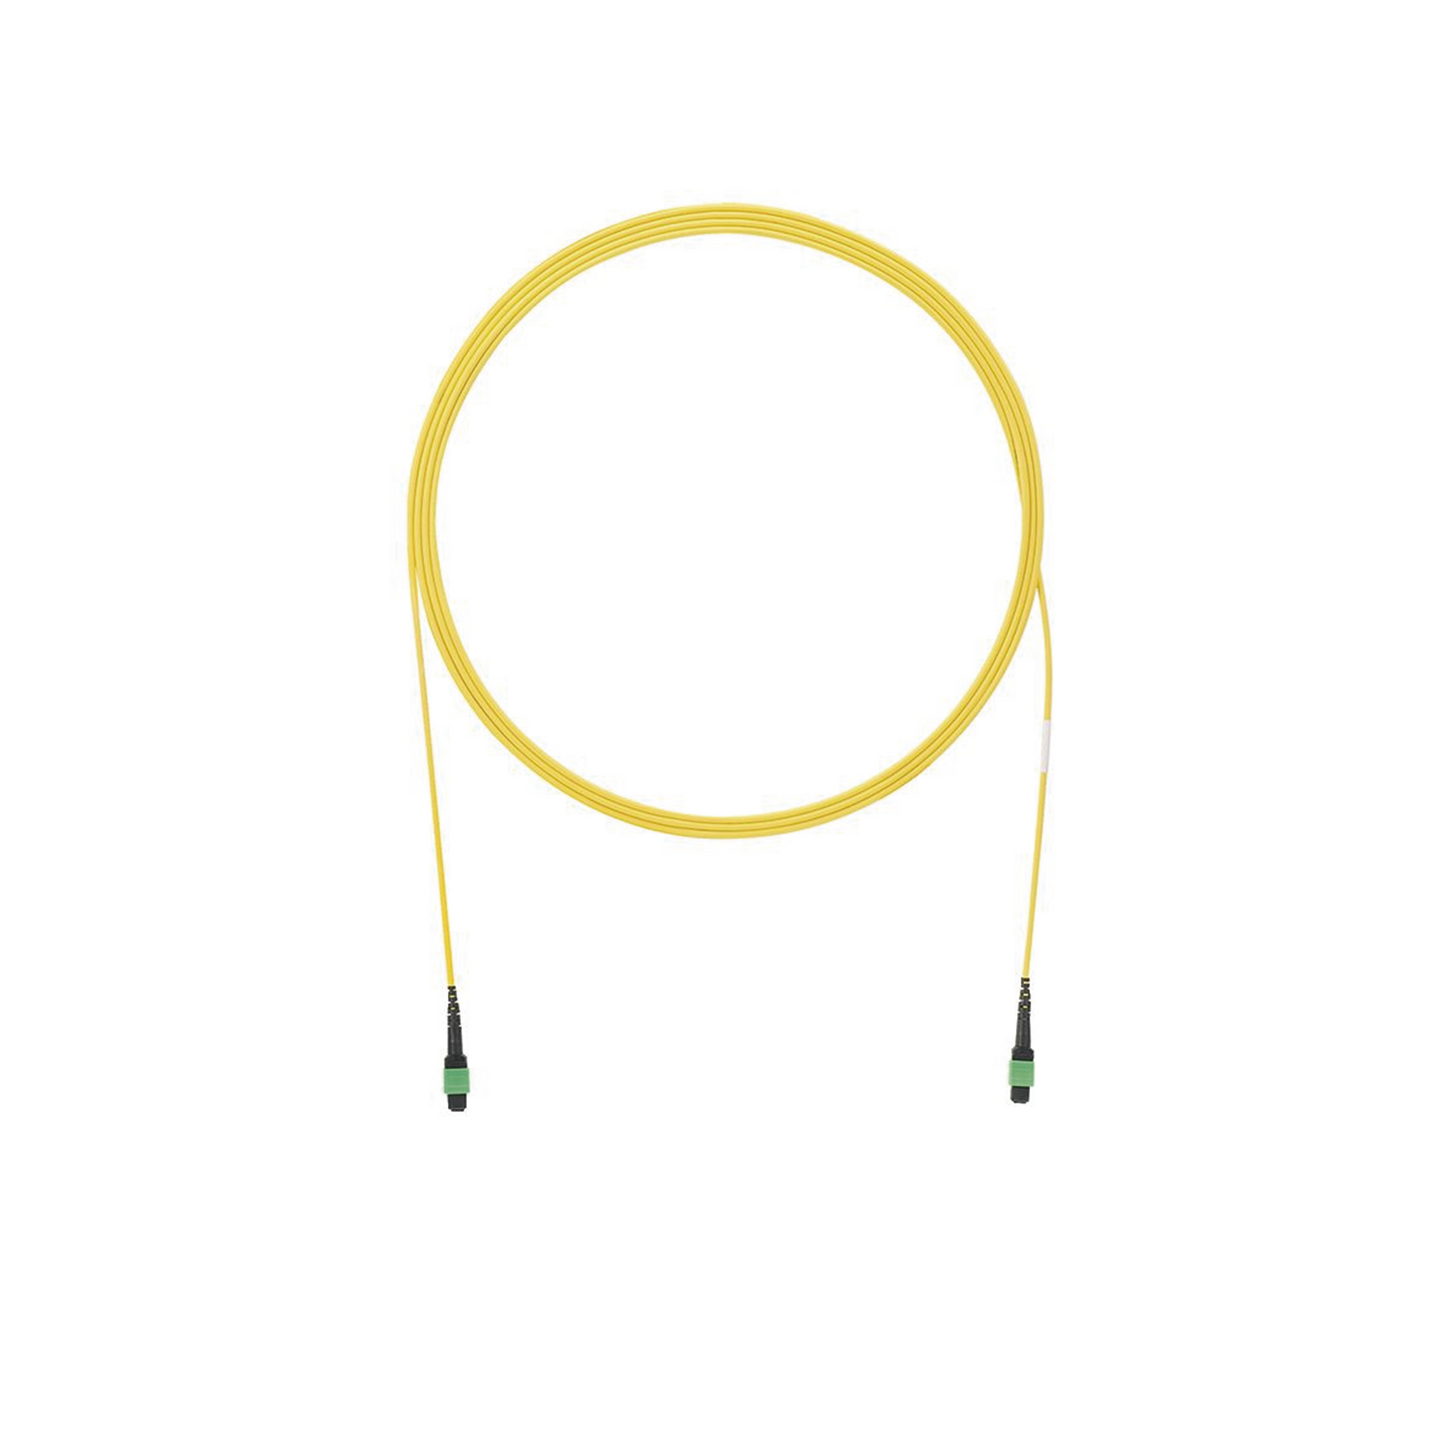 Cable de Interconexión de 12 Fibras Ópticas Monomodo OS2, de PanMPO Hembra a PanMPO Hembra, Polaridad A, LSZH, de 1.5 Metros